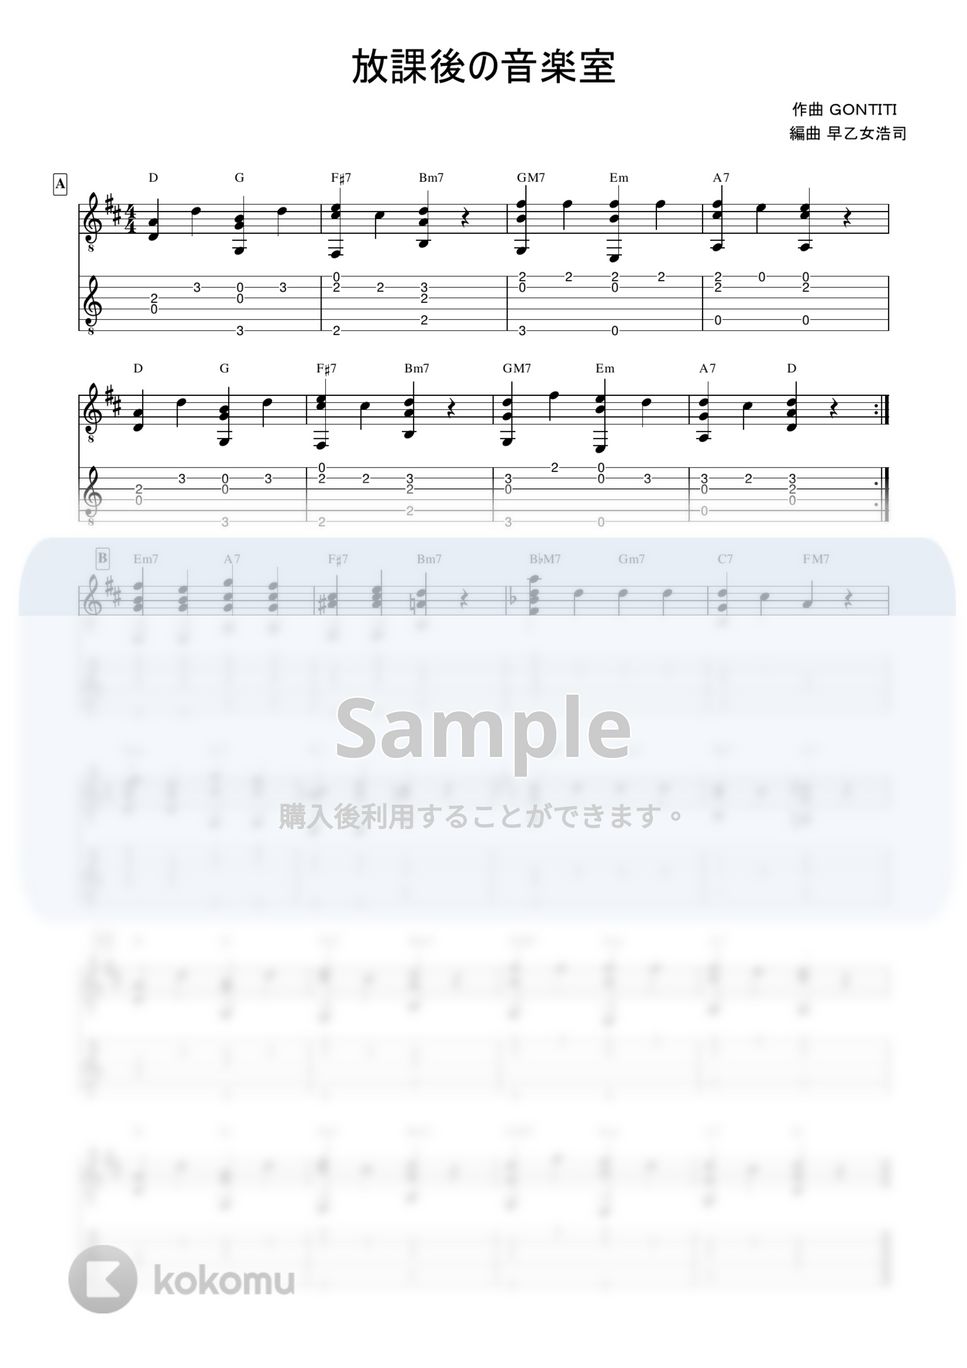 GONTITI - 放課後の音楽室 (やさしいソロギター入門) by 早乙女浩司